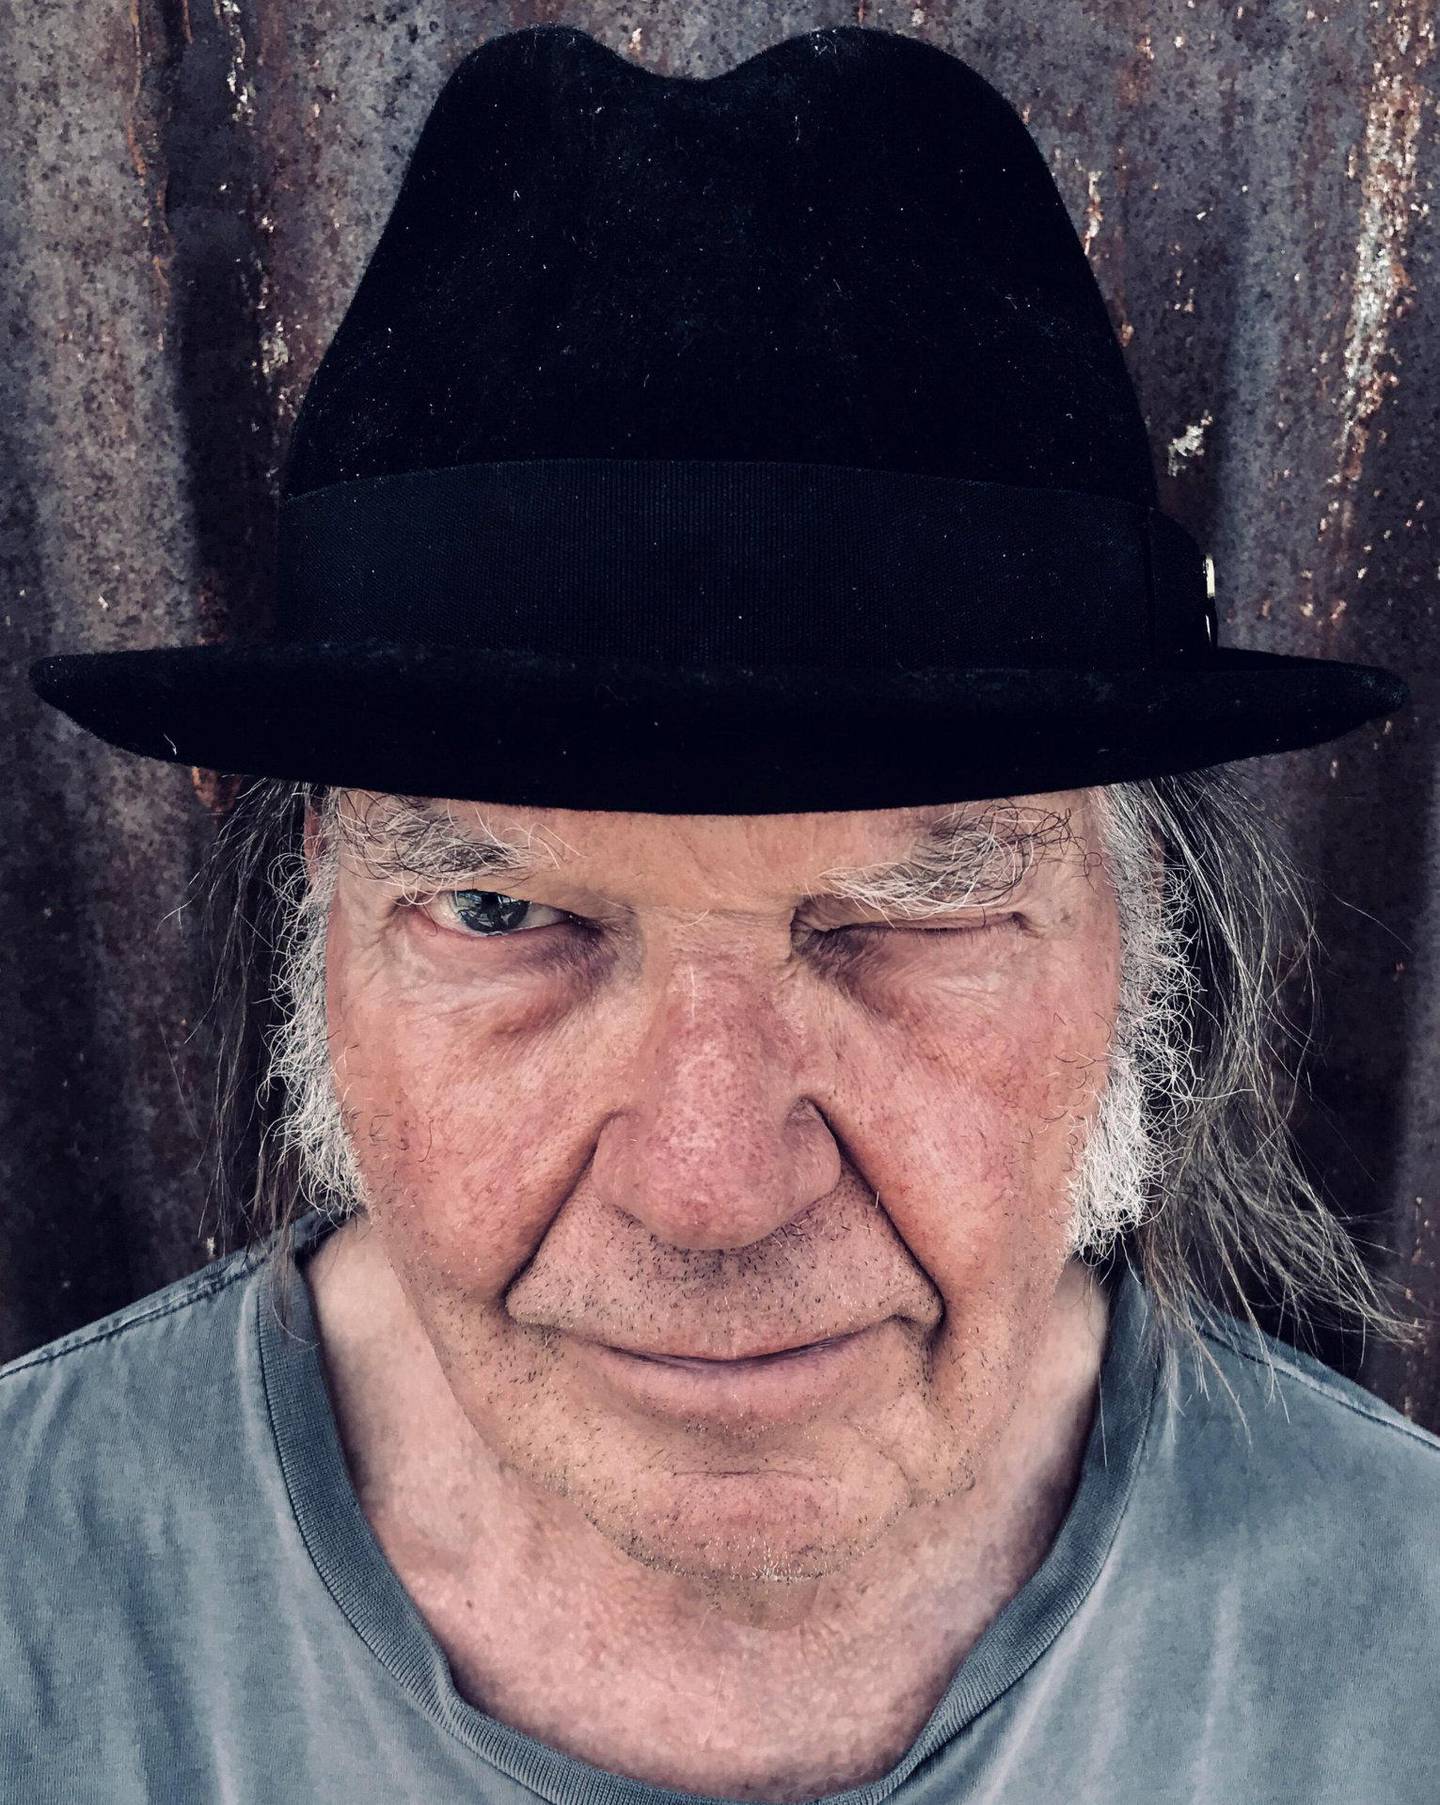 Neil Young i 2020, alltid med både noe nytt og noe gammelt å by på.
Foto: D. H. Lovelife